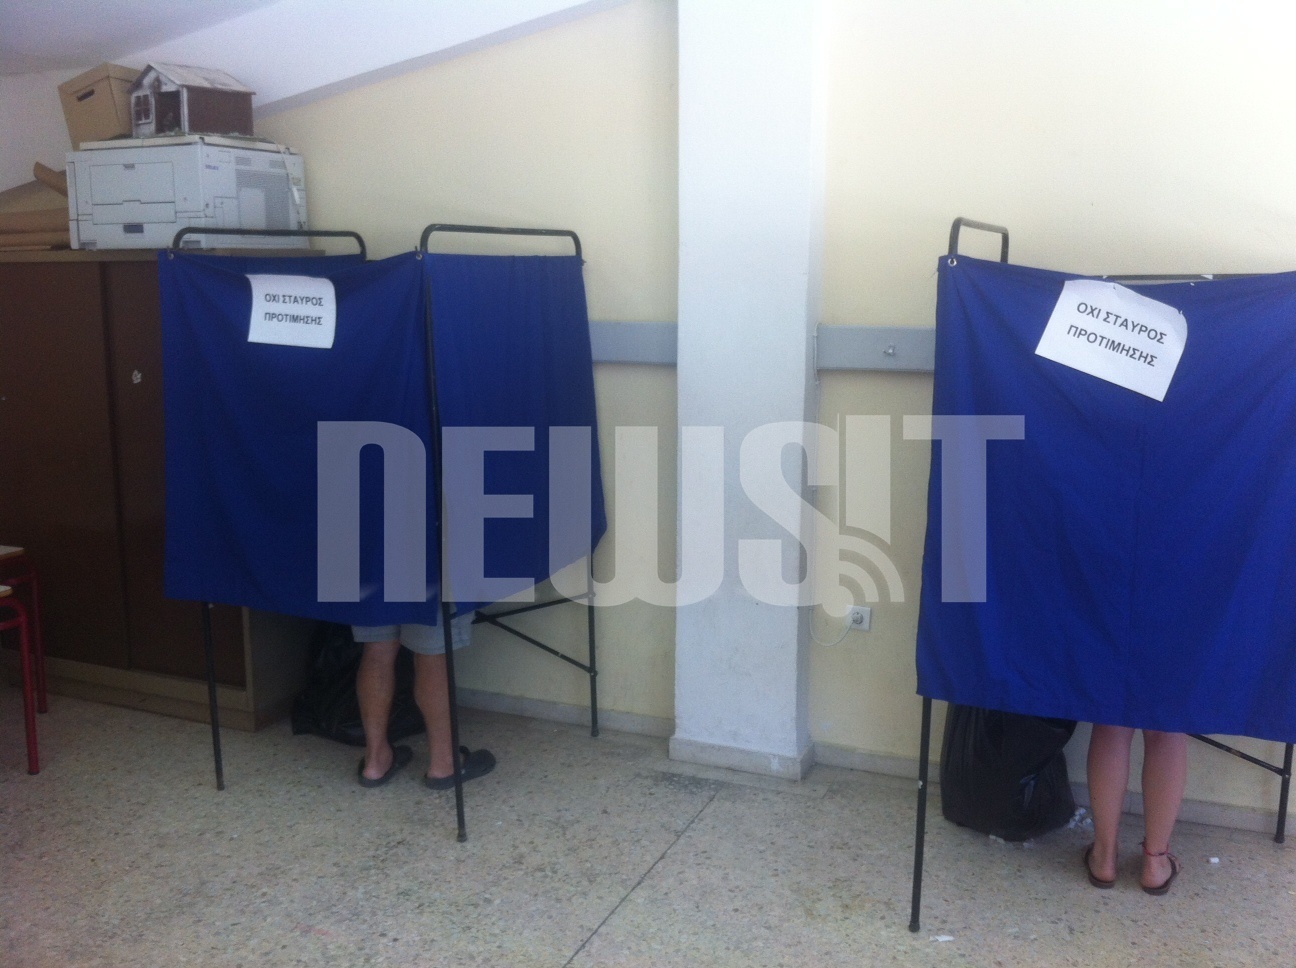 Αγανάκτιση στα εκλογικά κέντρα στις καμμένες περιοχές: “Έπρεπε να φέρω να βάλω στάχτη αντί για ψηφοδέλτιο”